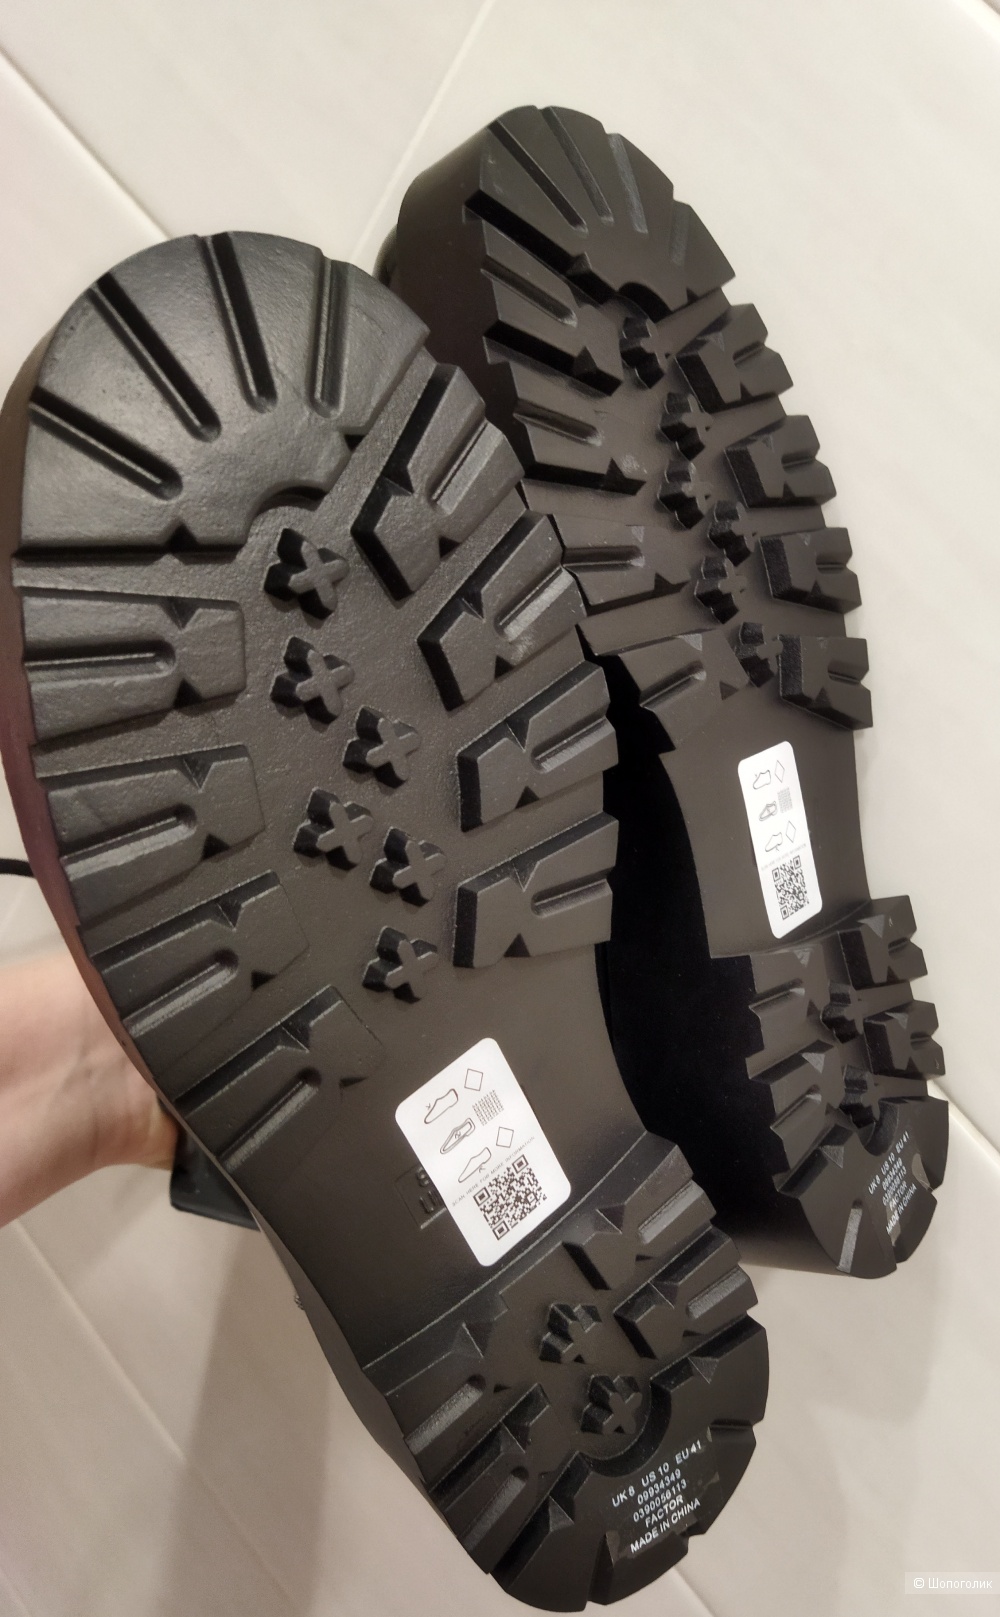 Резиновые ботинки Asos (унисекс), на  размер русский 40-41